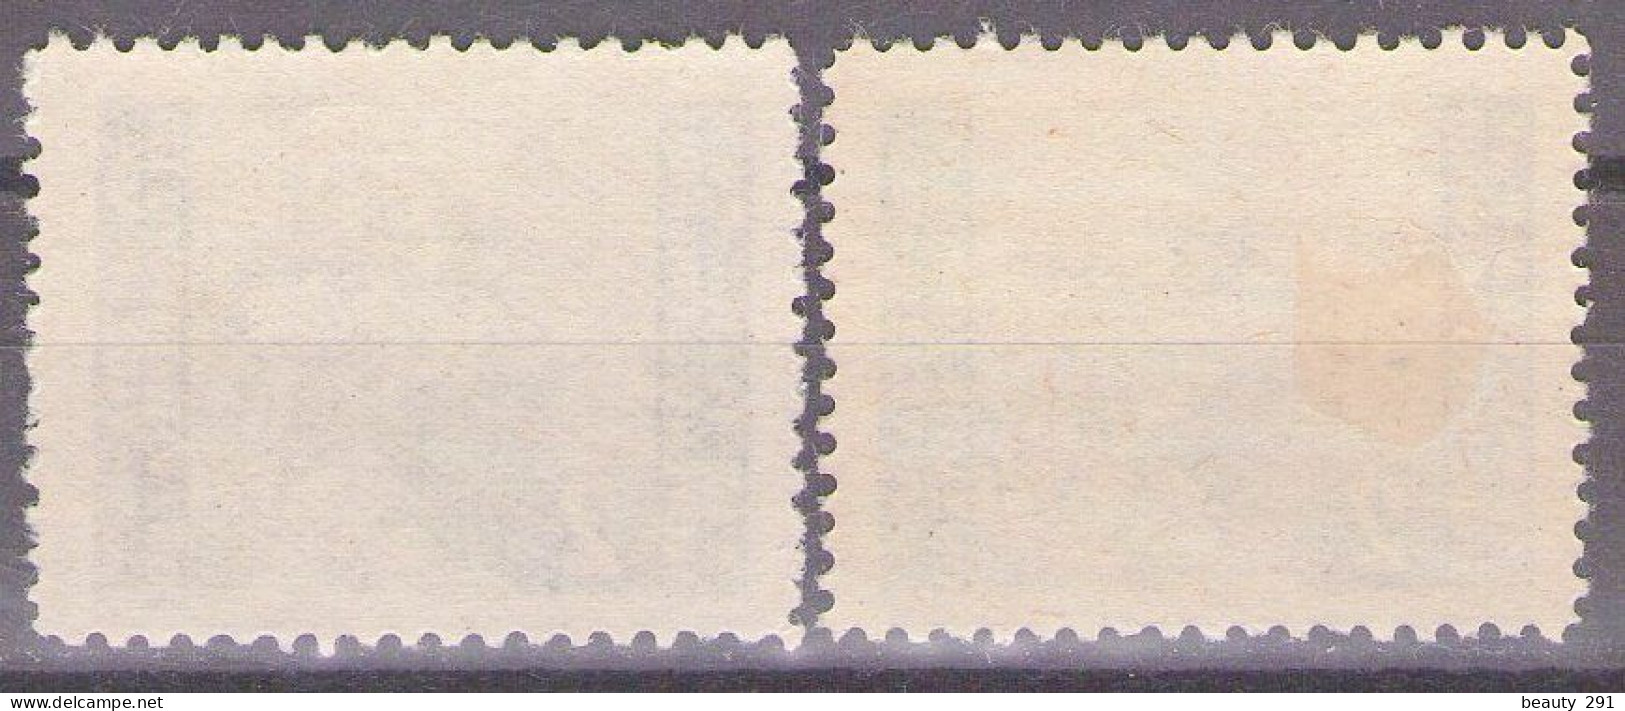 ISTRIA E LITORALE SLOVENO 1945. Tiratura Di Lubiana, Dent. 10 1/2-11 1/2, Sass. 45,DIFFERENT COLOR MH* - Yugoslavian Occ.: Slovenian Shore